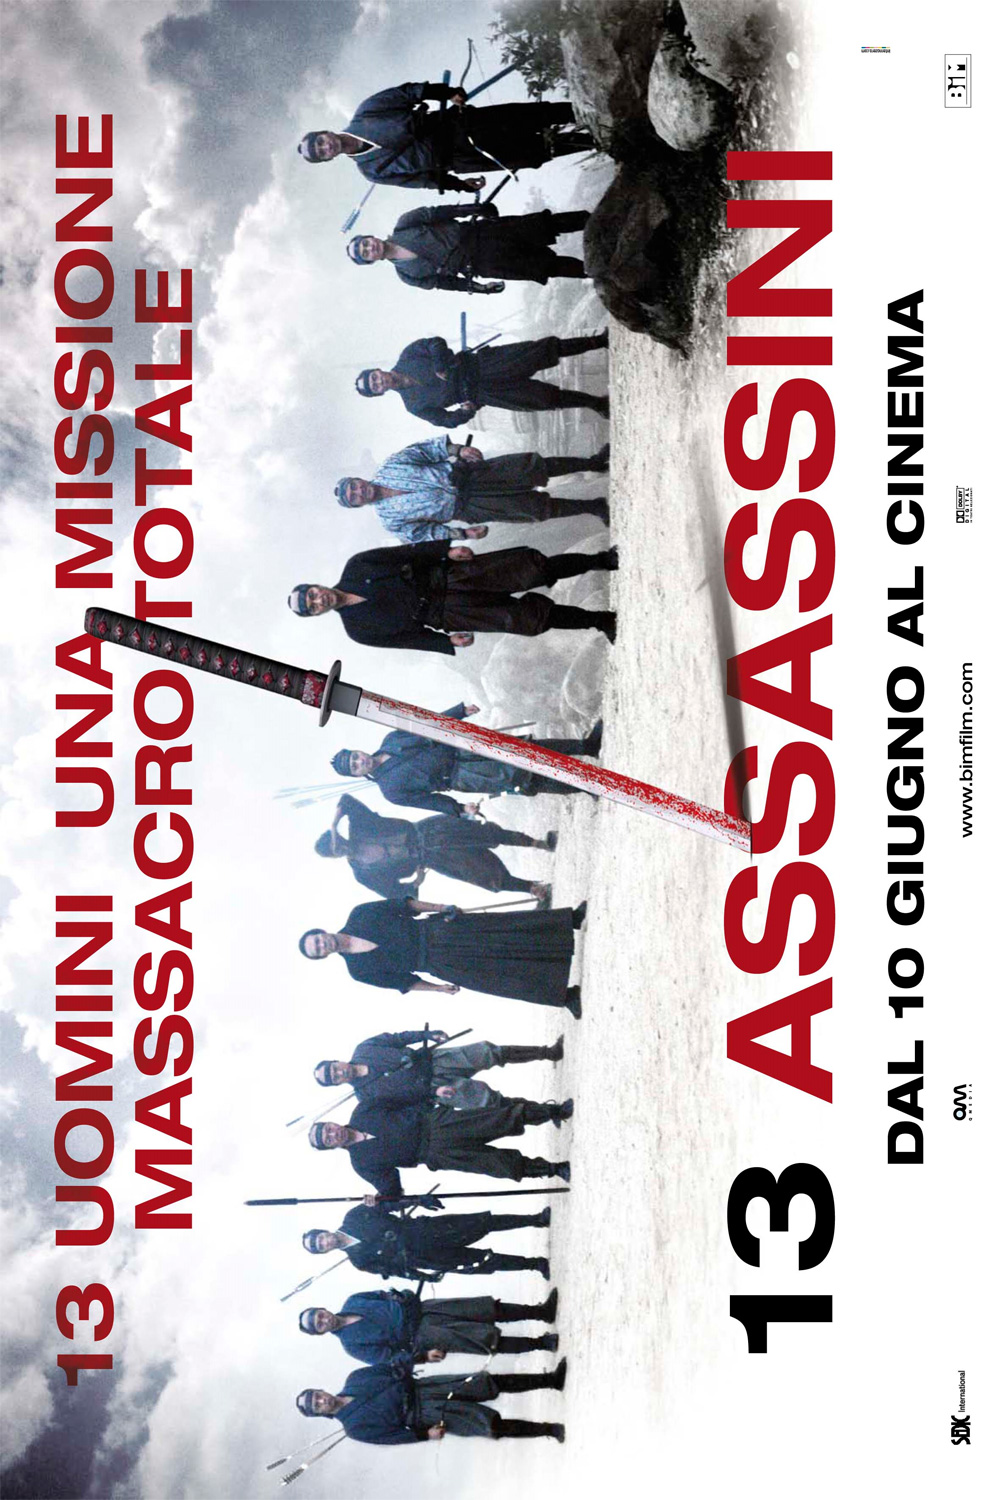 Poster 13 Assassini